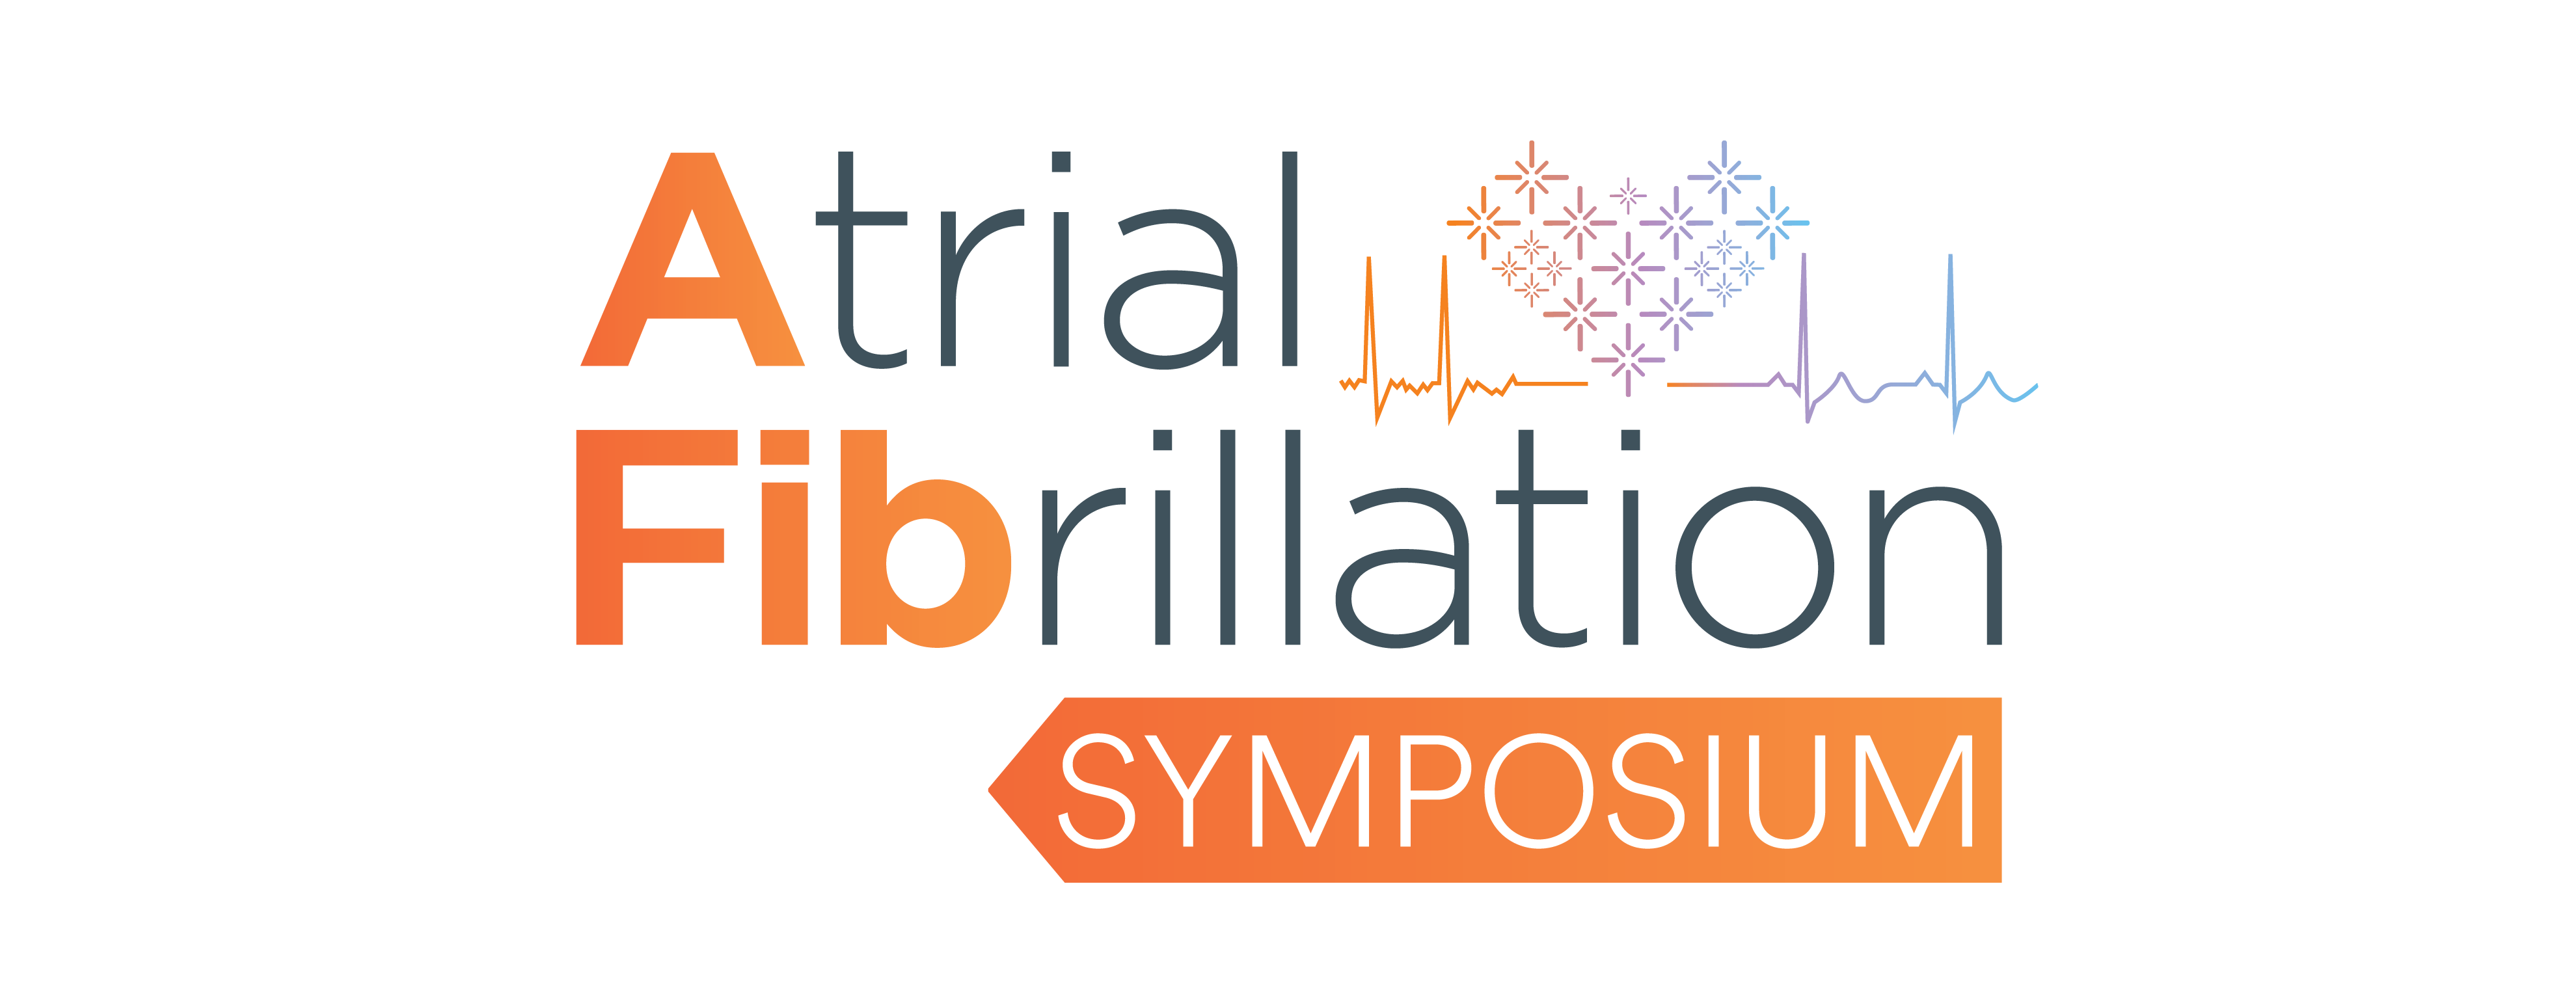 Atrial Fibrillation (AFib) Symposium Johnson & Johnson Institute